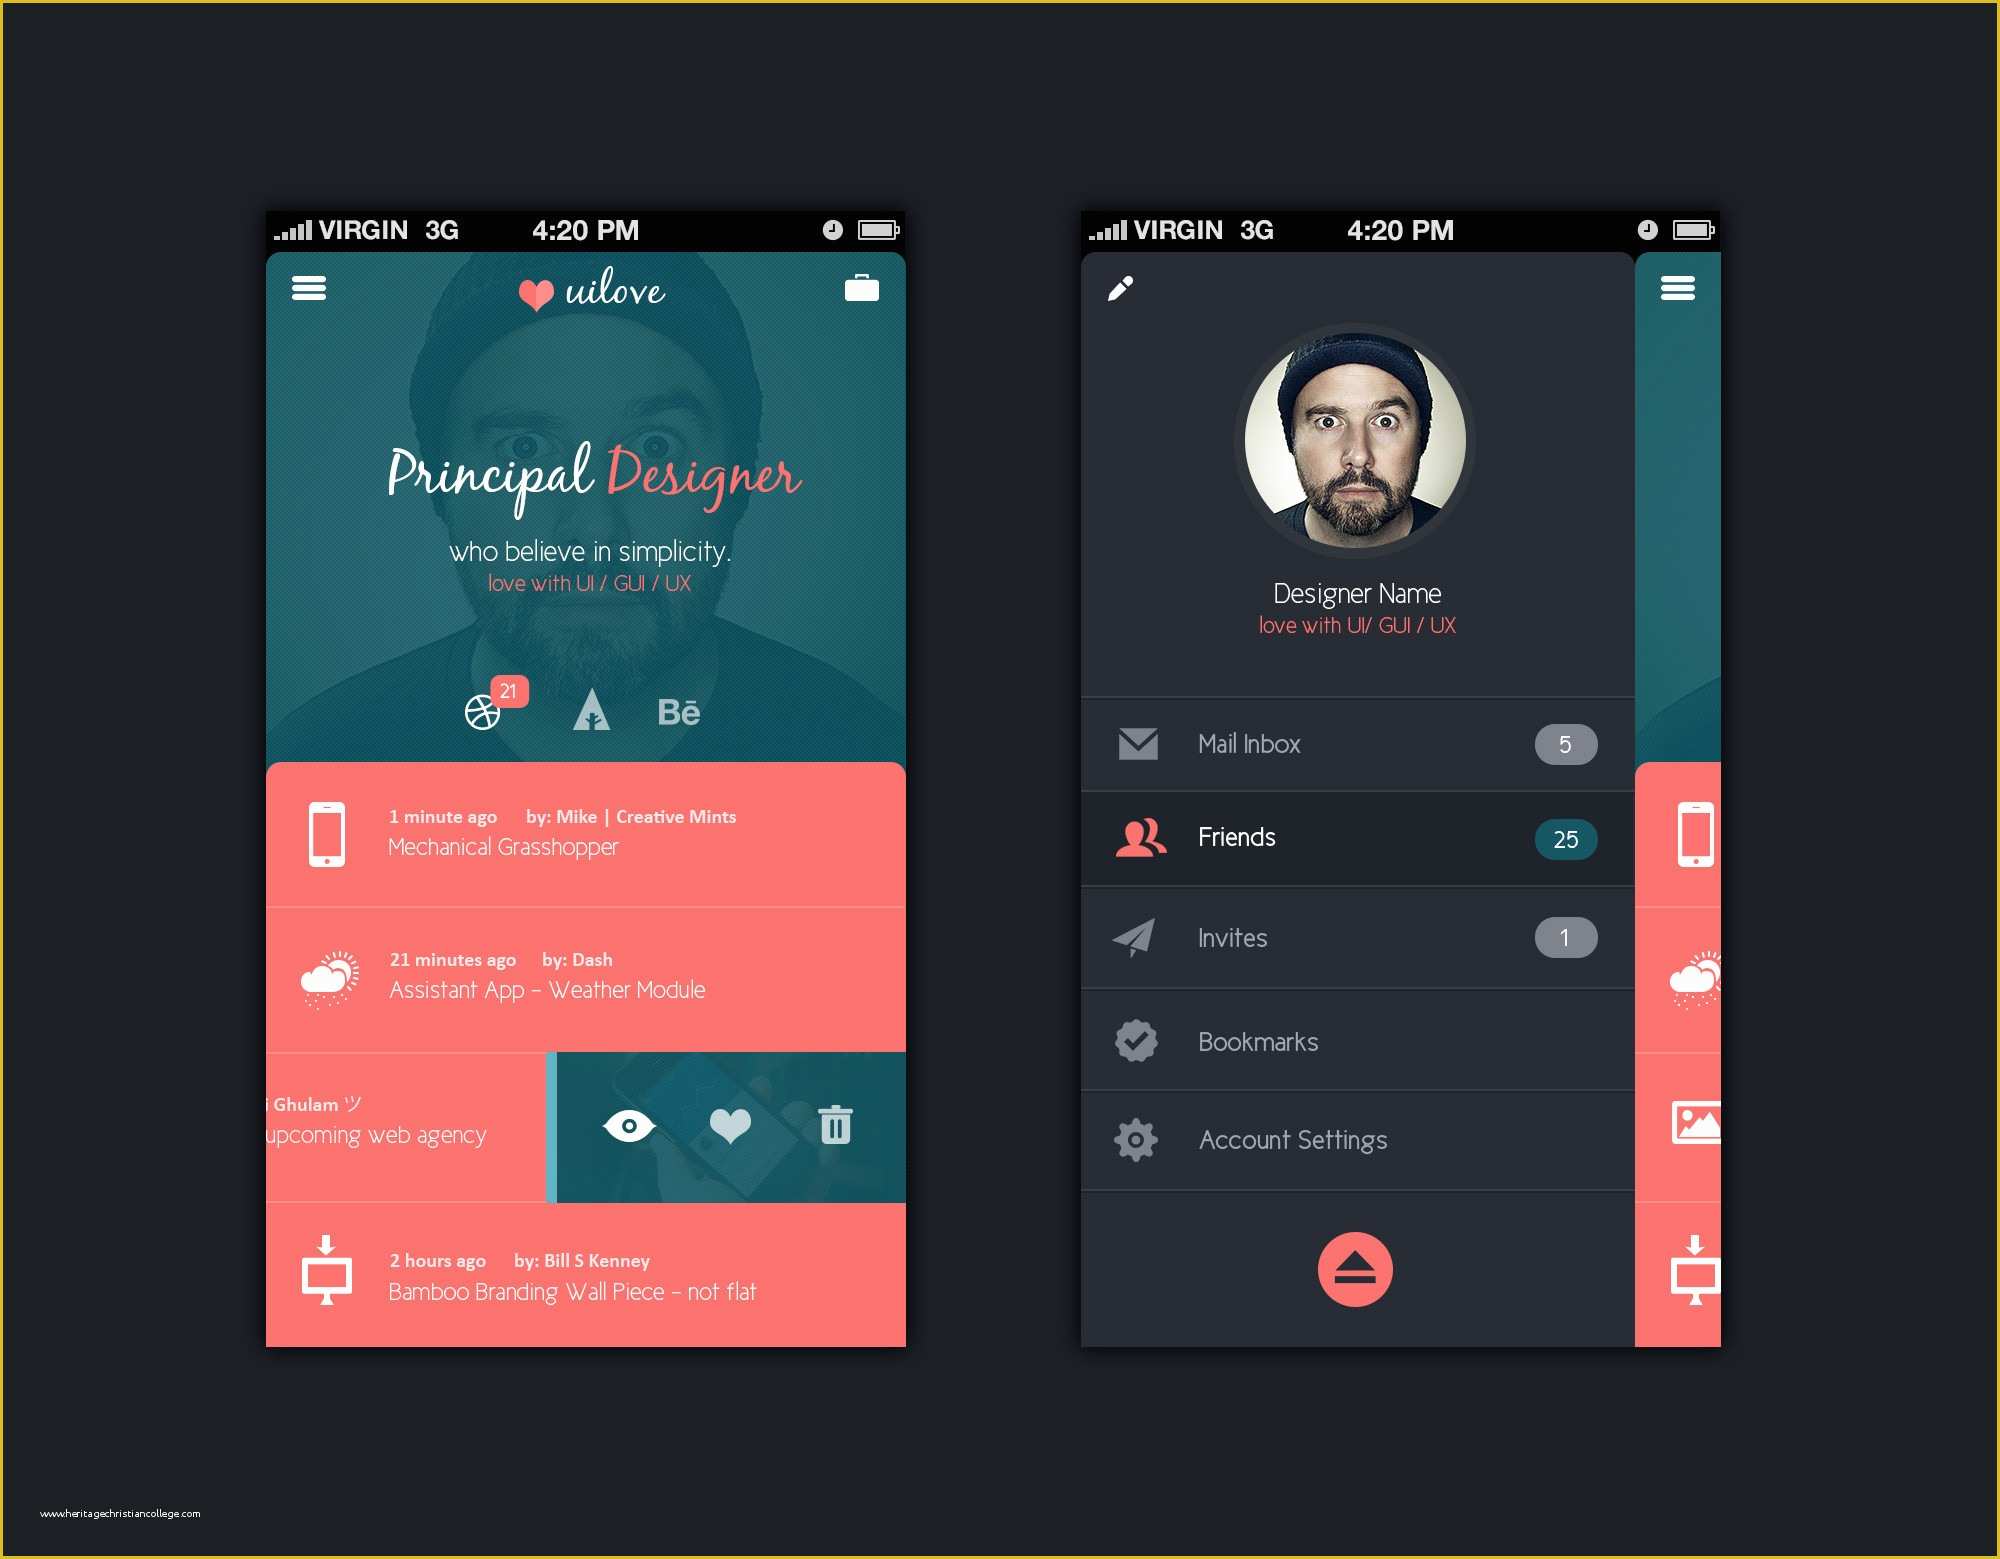 mobile-app-design-templates-ios-app-design-android-app-design-mobile